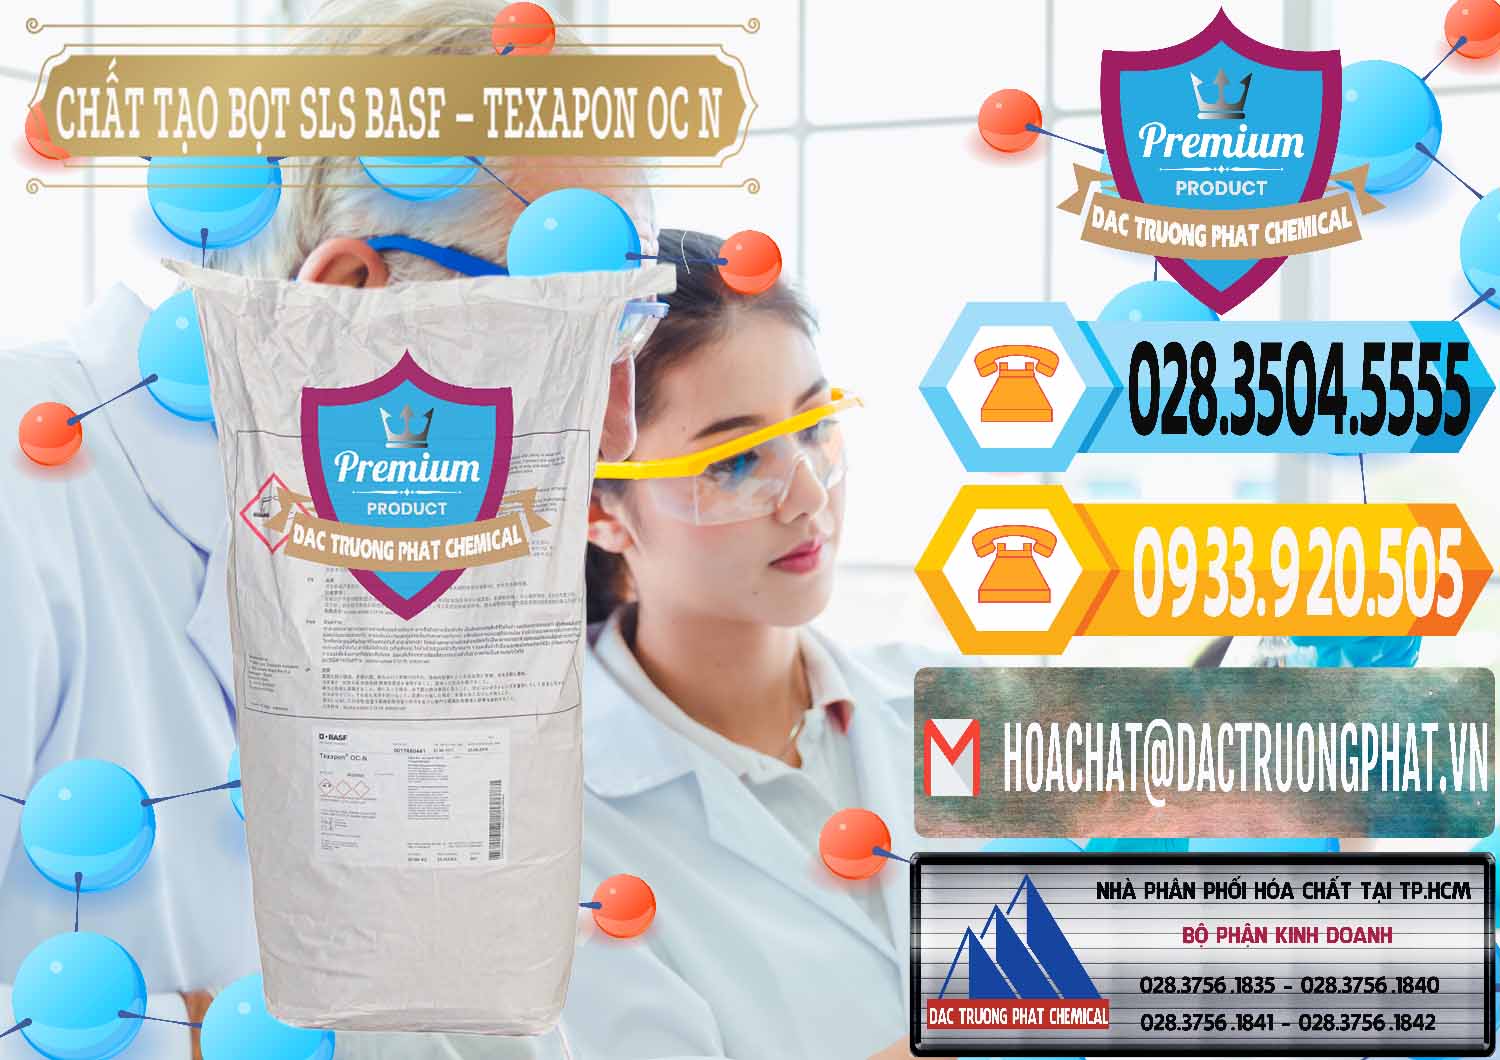 Công ty chuyên cung ứng ( bán ) Chất Tạo Bọt SLS - Sodium Lauryl Sulfate BASF Texapon OC N - 0049 - Công ty nhập khẩu _ phân phối hóa chất tại TP.HCM - hoachattayrua.net